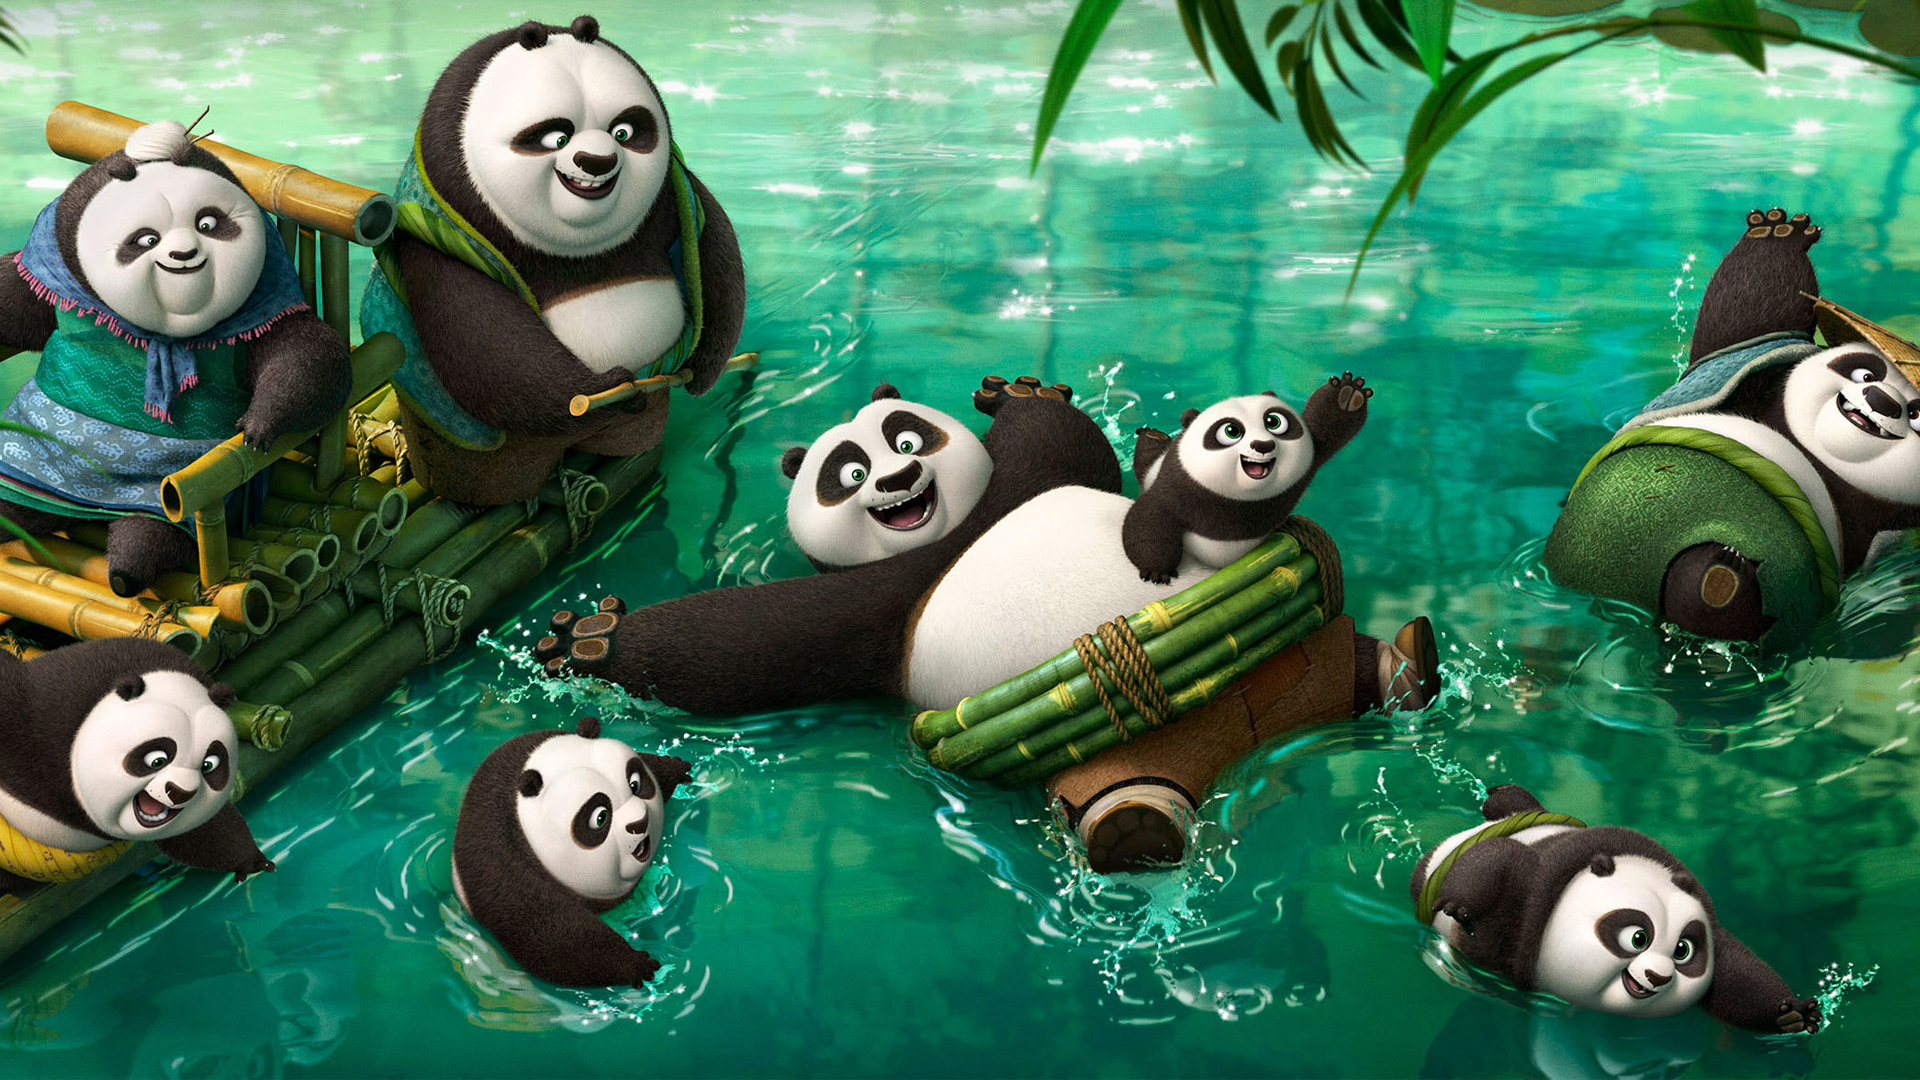 361209 descargar imagen po (kung fu panda), kung fu panda, películas, kung fu panda 3: fondos de pantalla y protectores de pantalla gratis